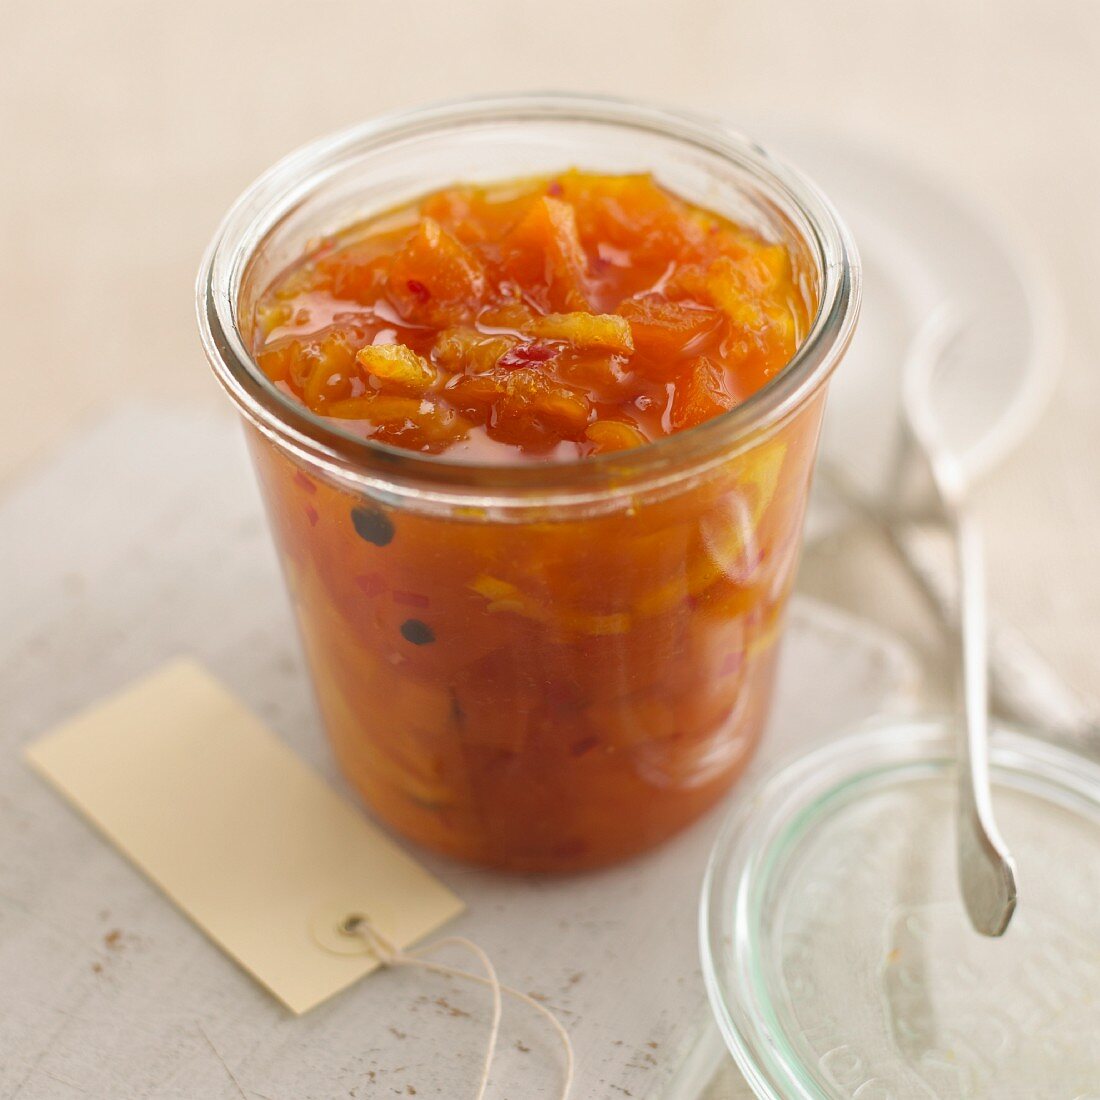 Pumpkin-chili marmalade in a preserving jar